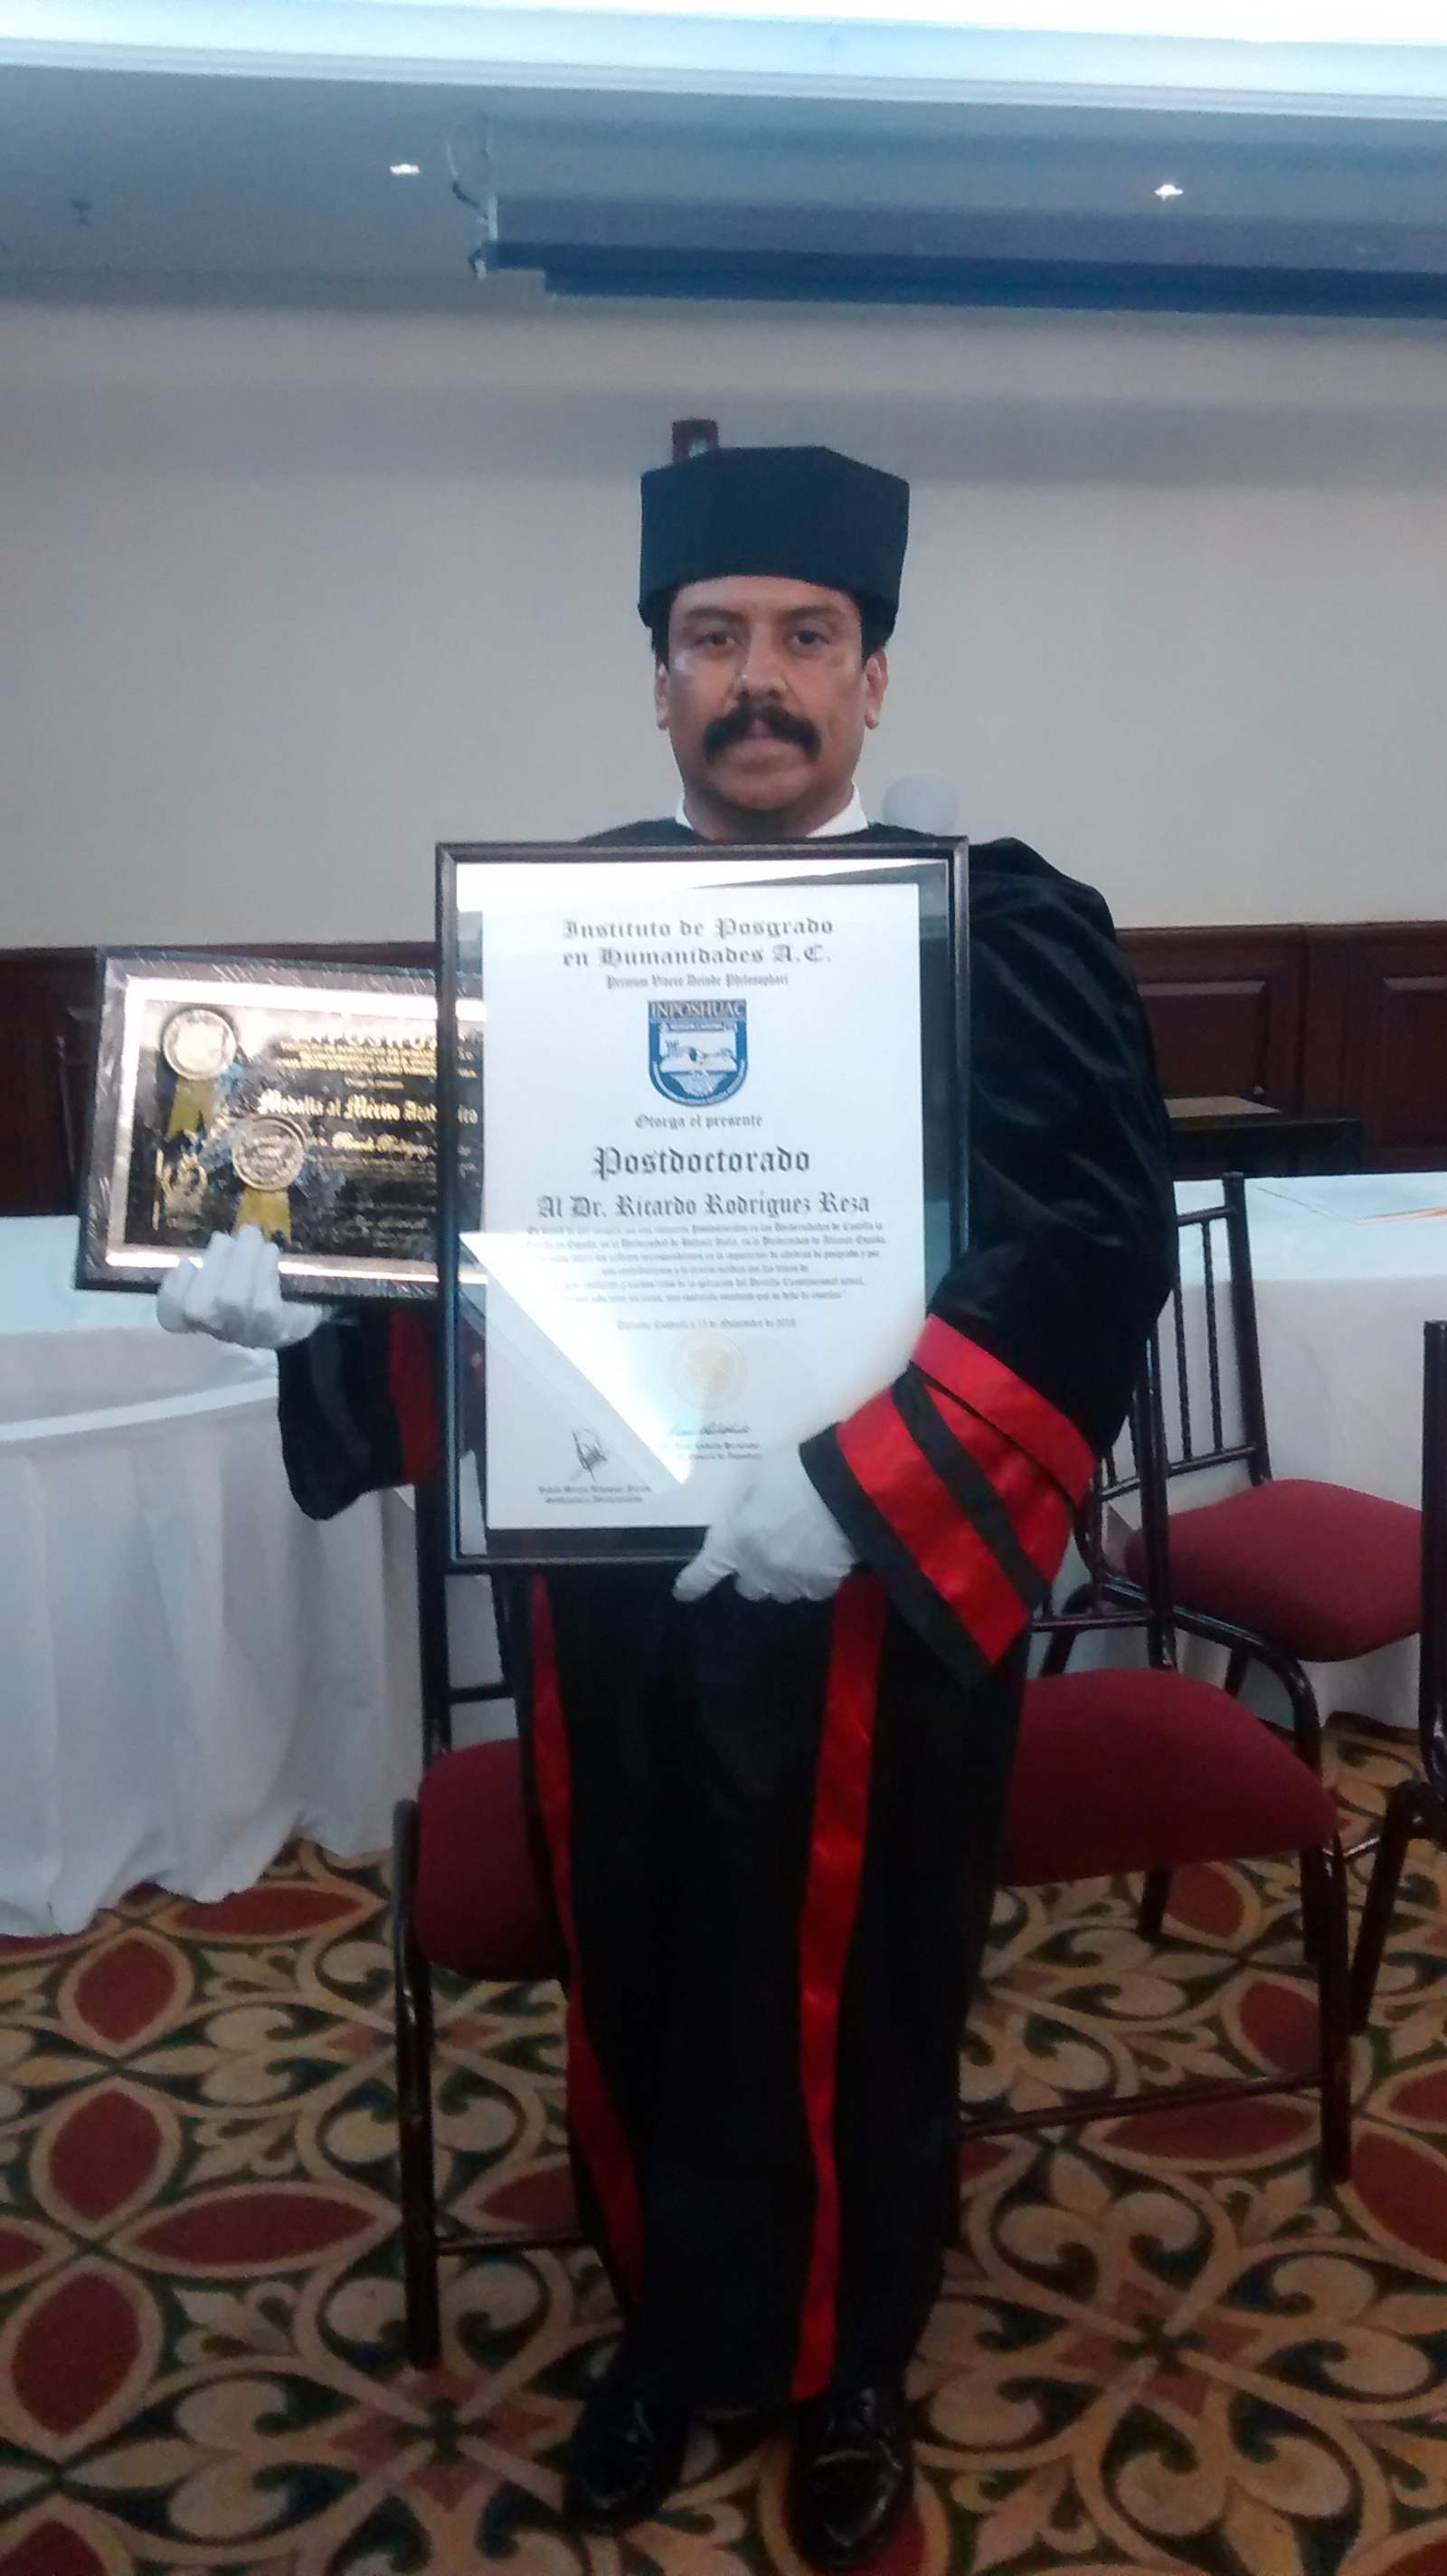 El Dr. Ricardo Rodríguez Reza, sosteniendo orgulloso su titulo en Postdoctorado y su Medalla al Mérito Académico.